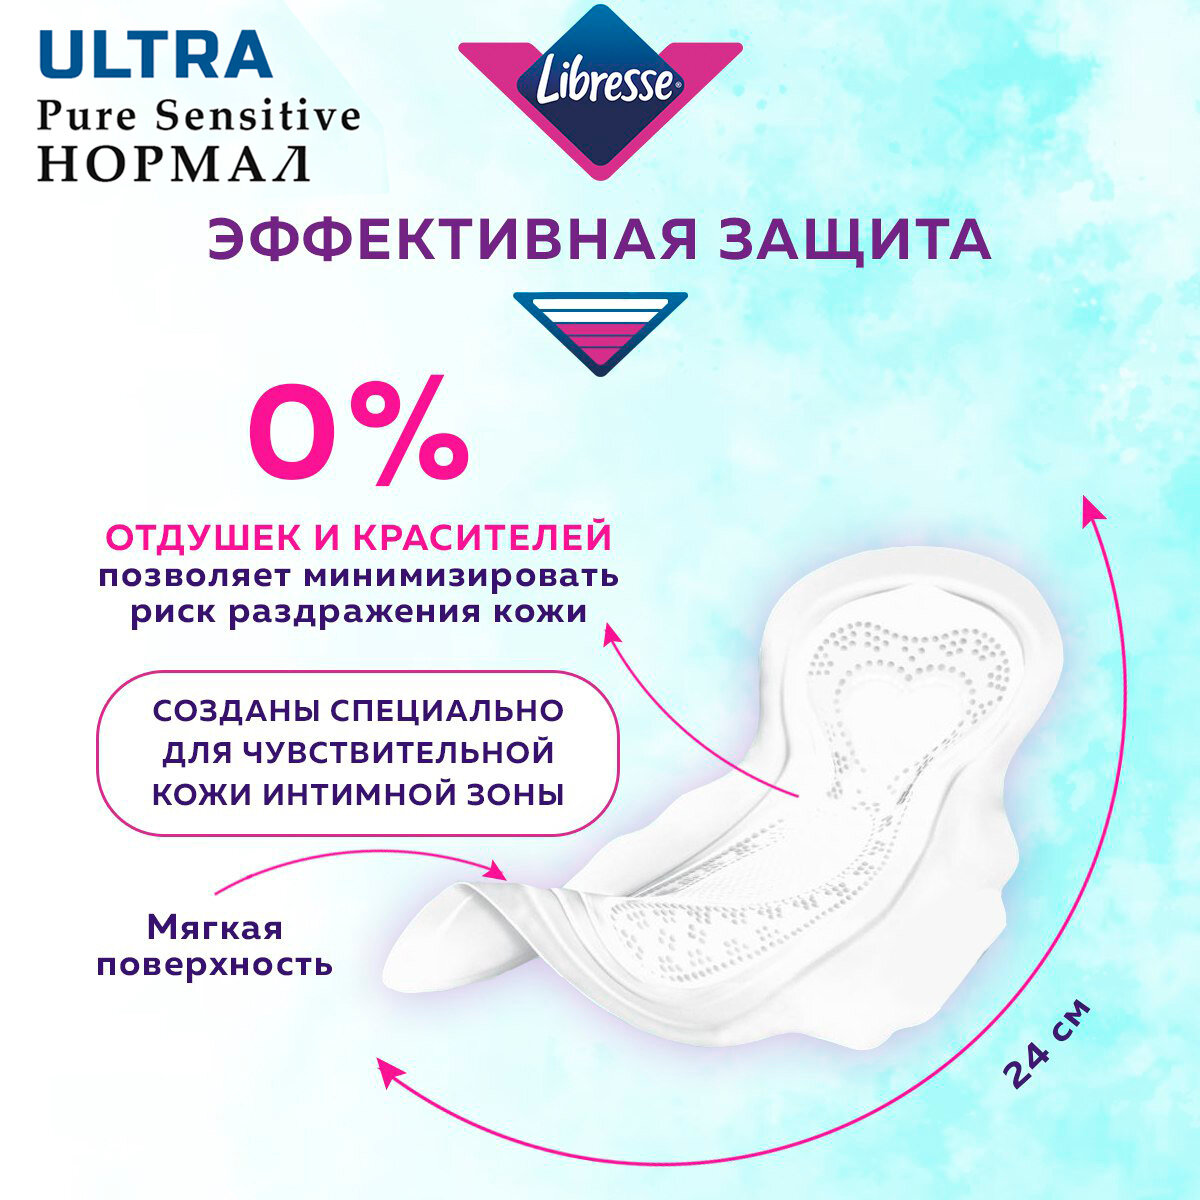 Прокладки женские LIBRESSE Ultra Pure Sensitive набор ночные 6 шт х 1 уп, нормал 8 шт х 2 уп